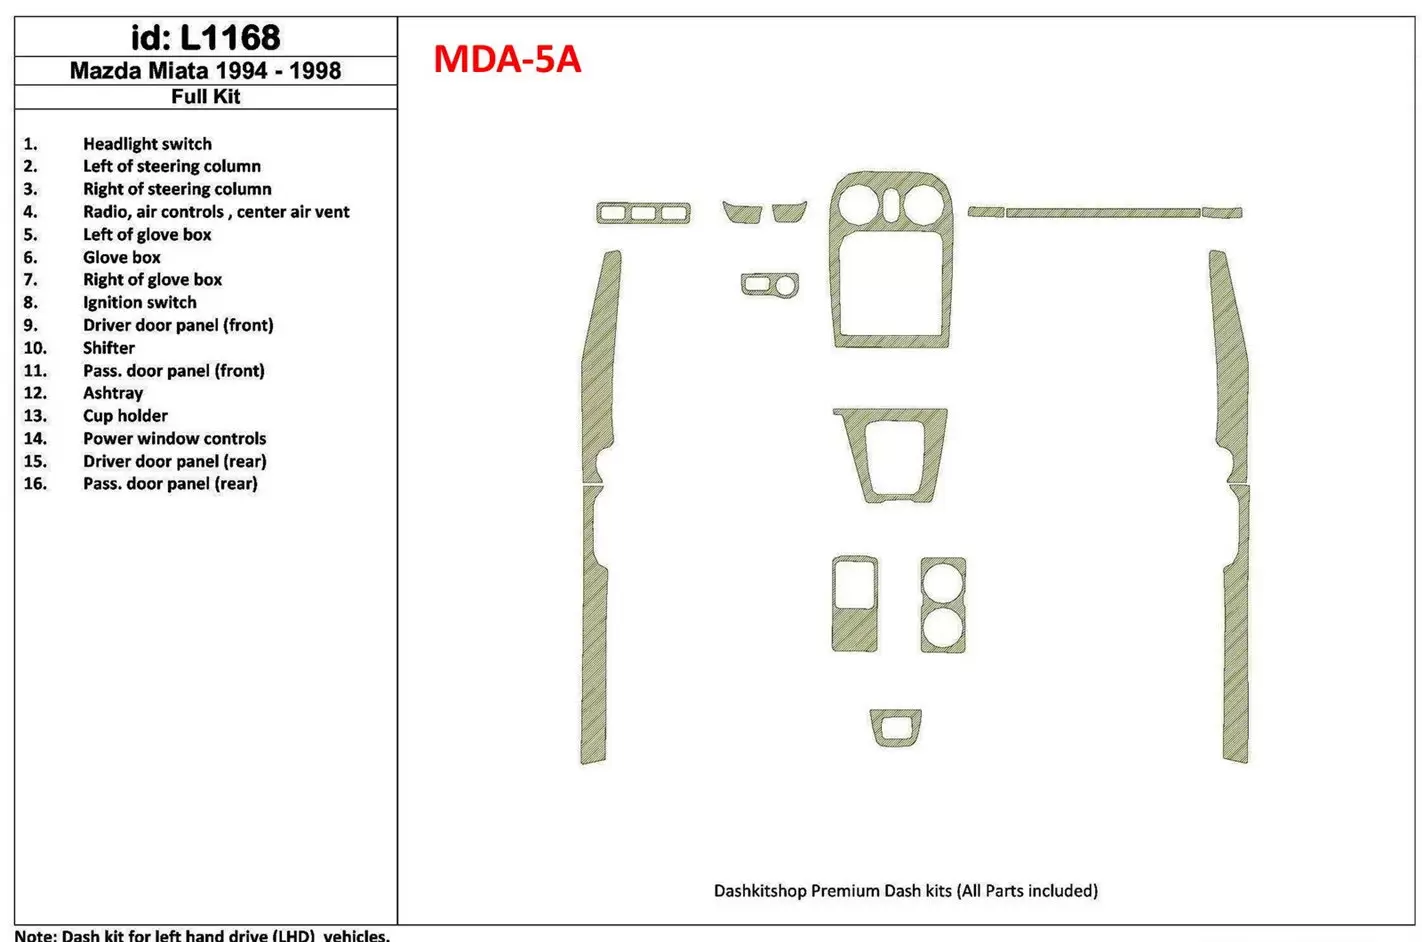 Mazda Miata 1994-1998 Ensemble Complet, 16 Parts set BD Kit la décoration du tableau de bord - 1 - habillage decor de tableau de